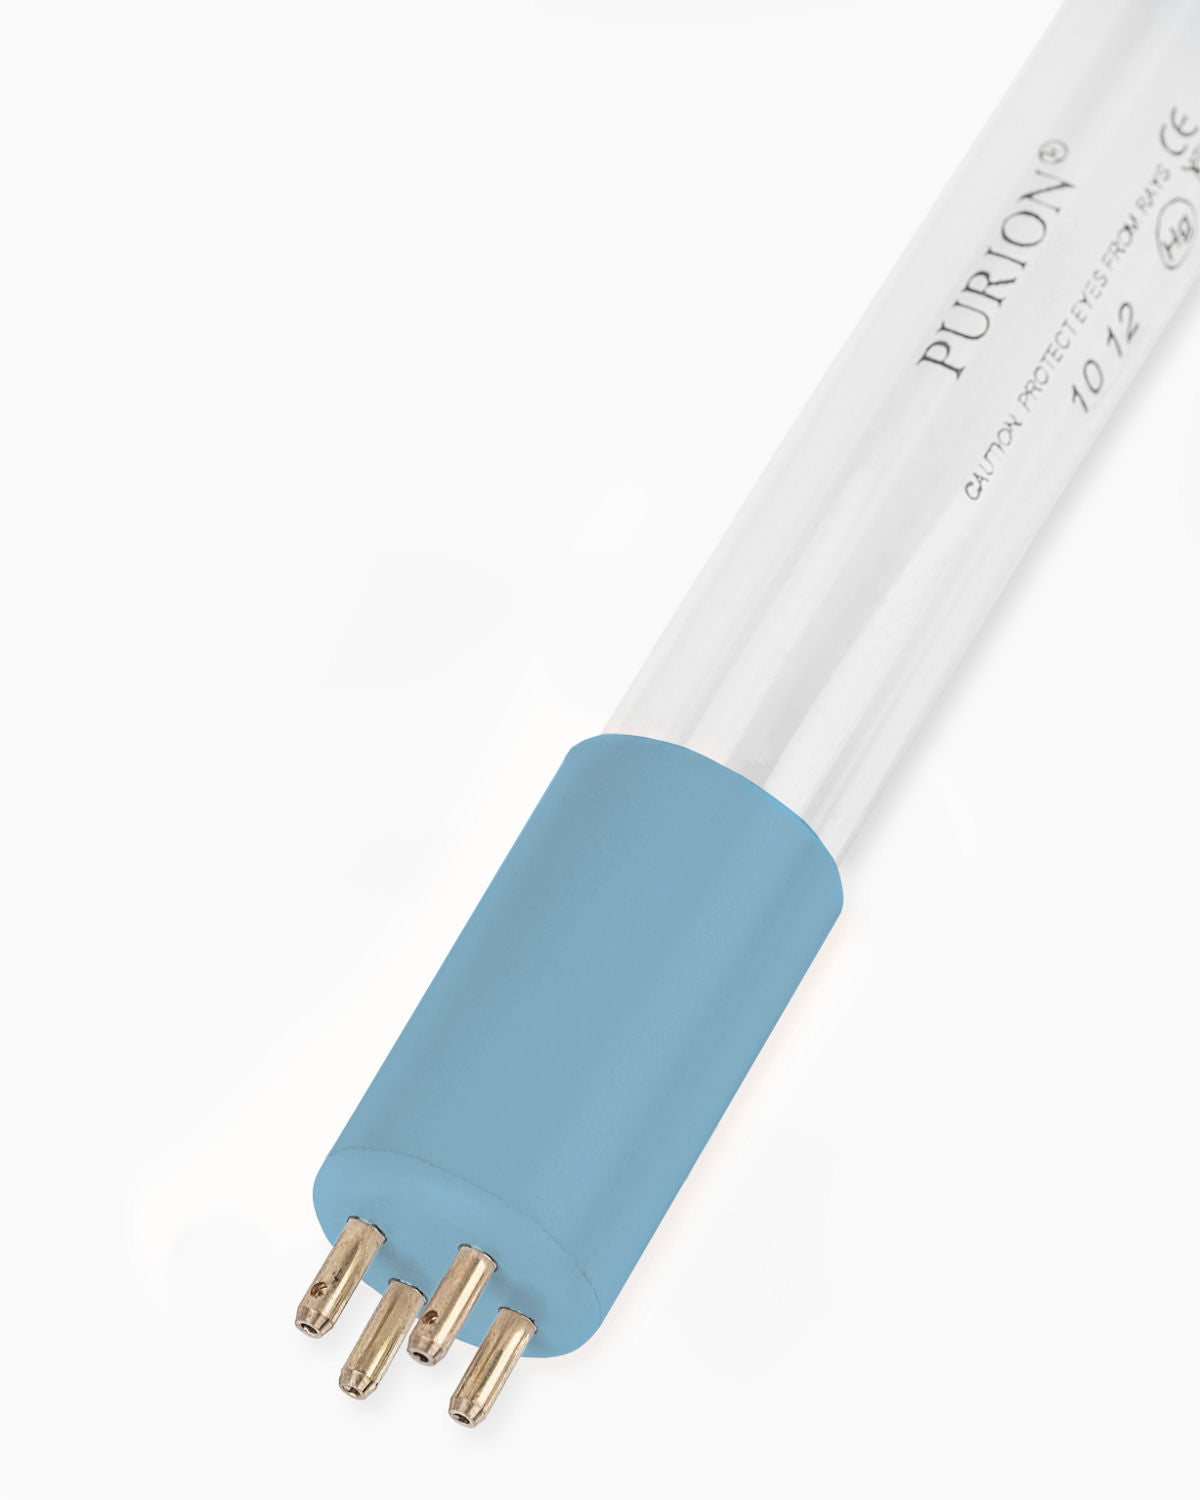 Eine blaue PURION 2500 90 W DUAL Basic Lichtröhre auf weißem Hintergrund, eingesetzt zur UV-C-Desinfektion in Hotels und Mehrfamilienhäusern.